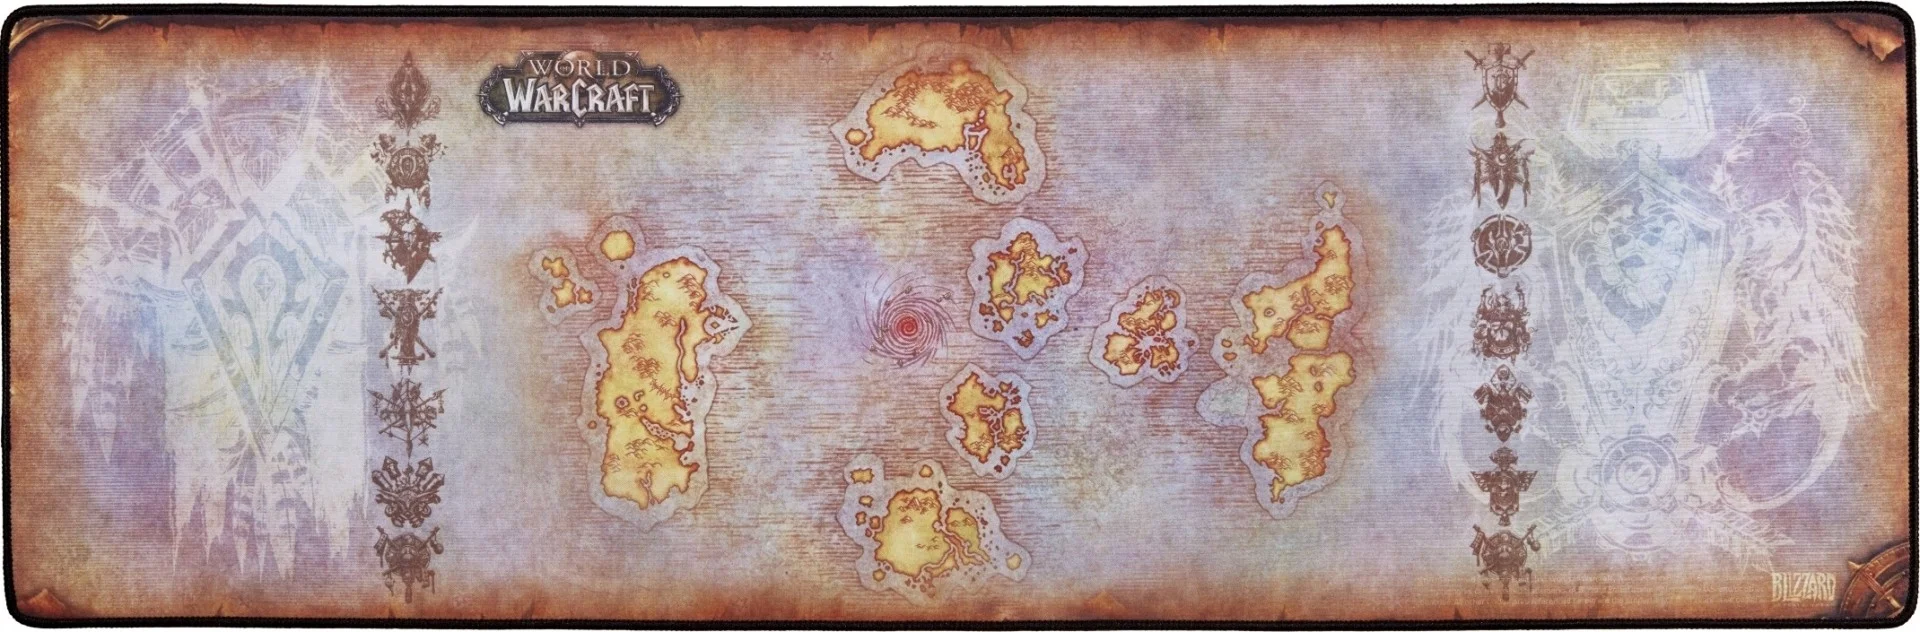 Blizzard выпустила книжку-раскладку по World of Warcraft - фото 1